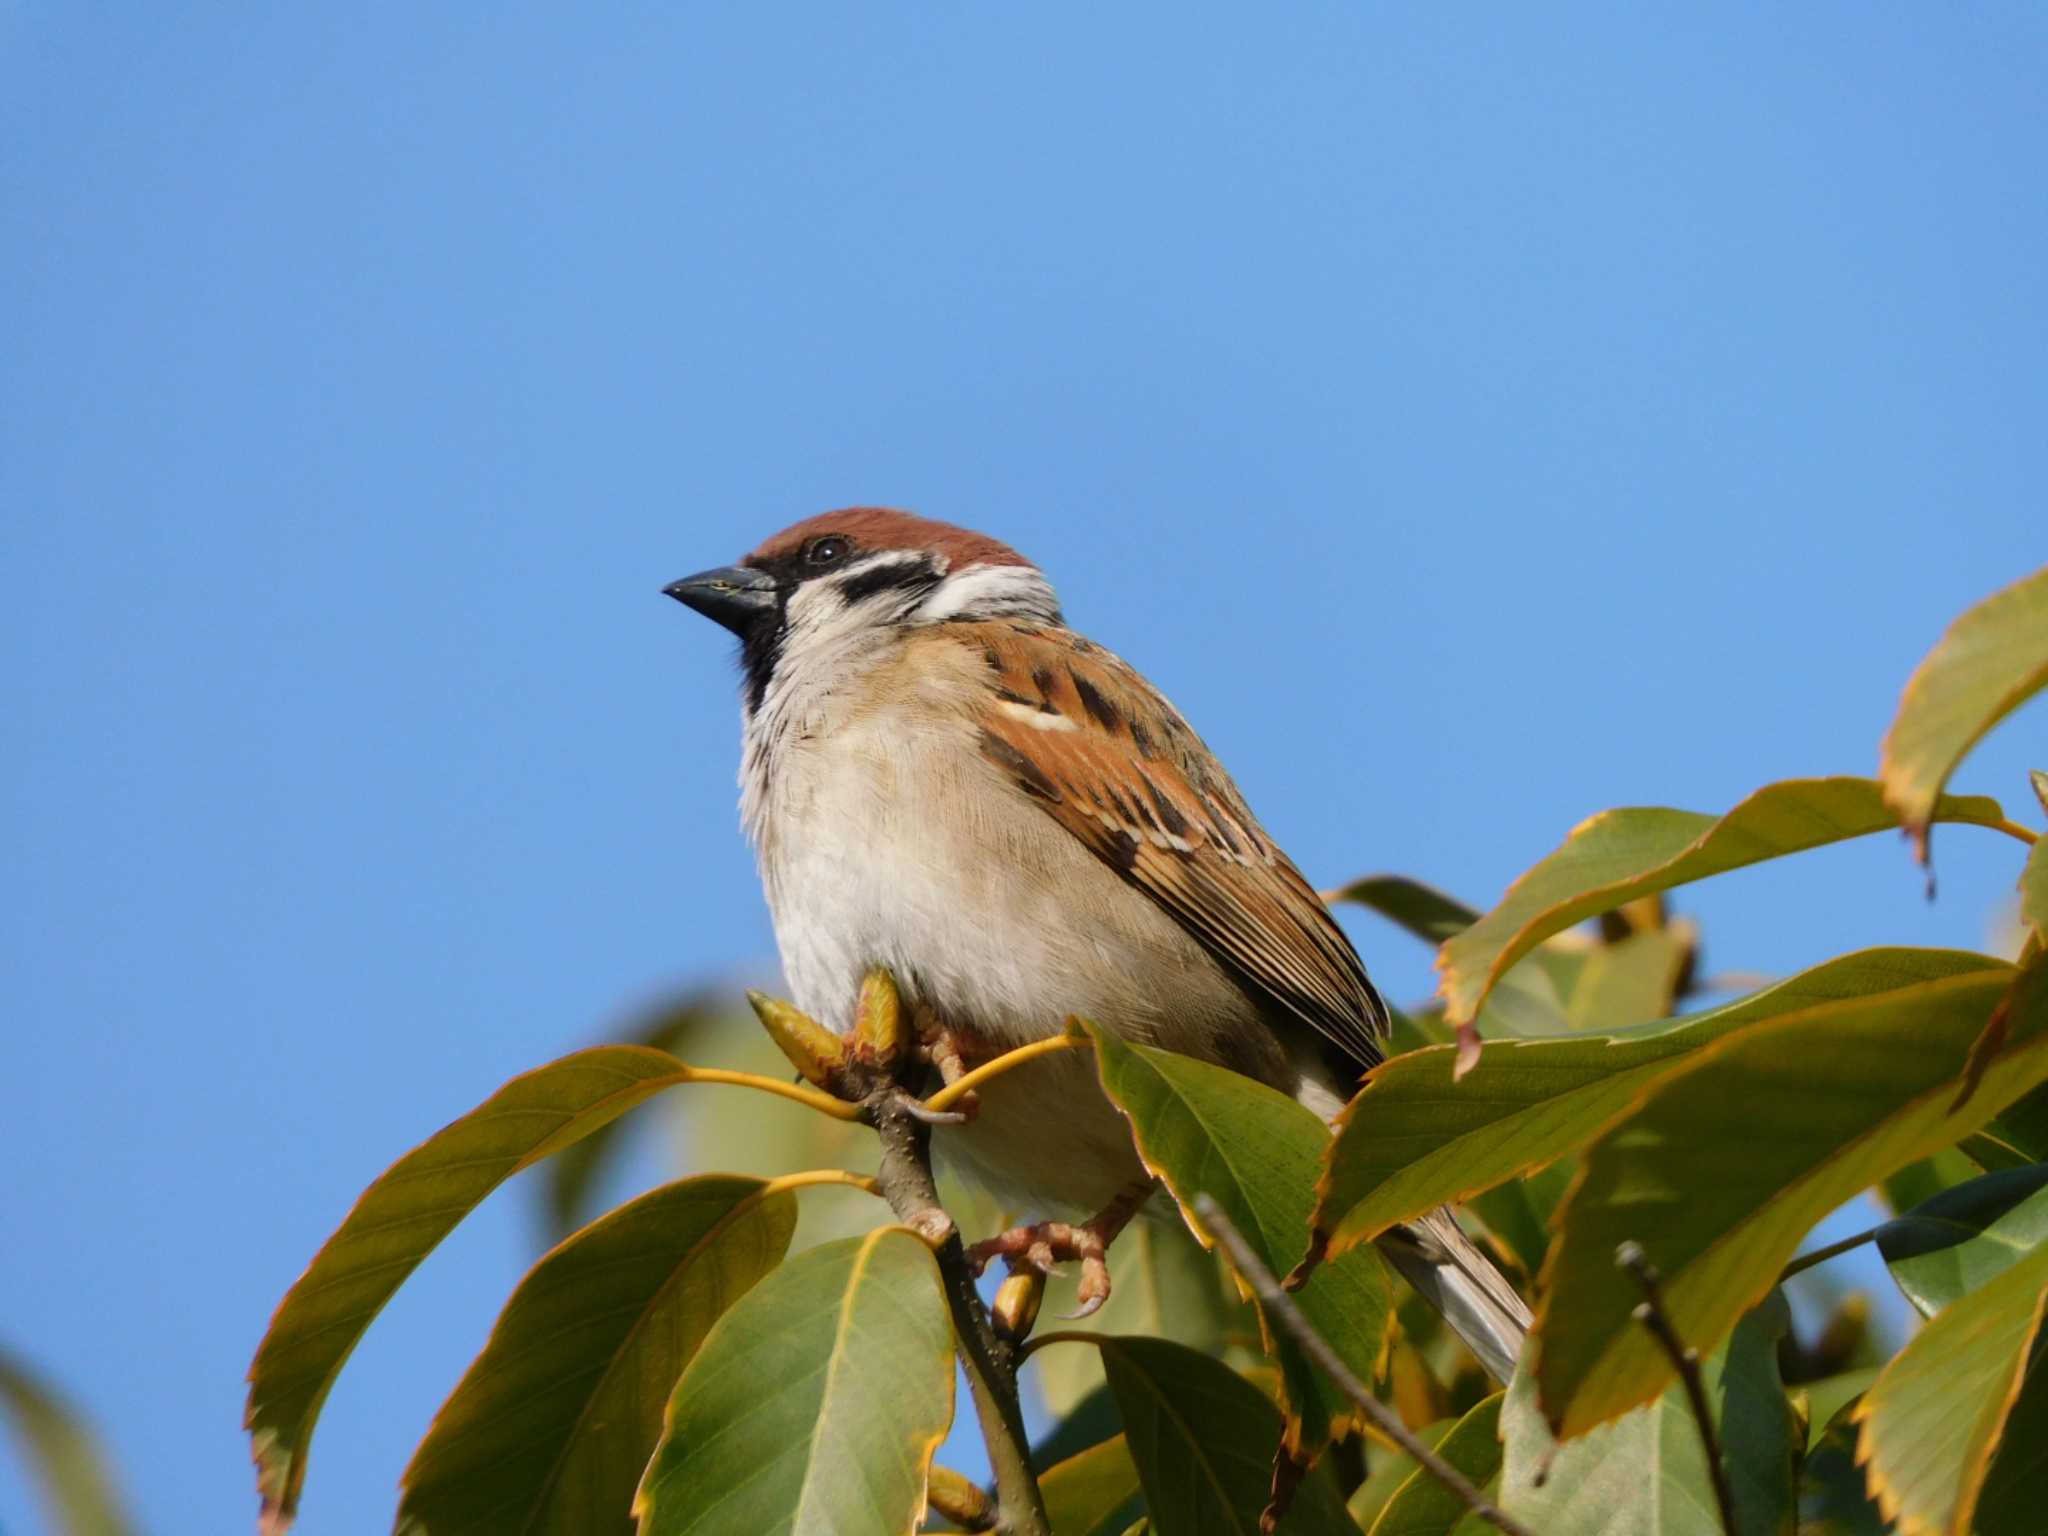 Photo of Eurasian Tree Sparrow at Osaka castle park by mkmole